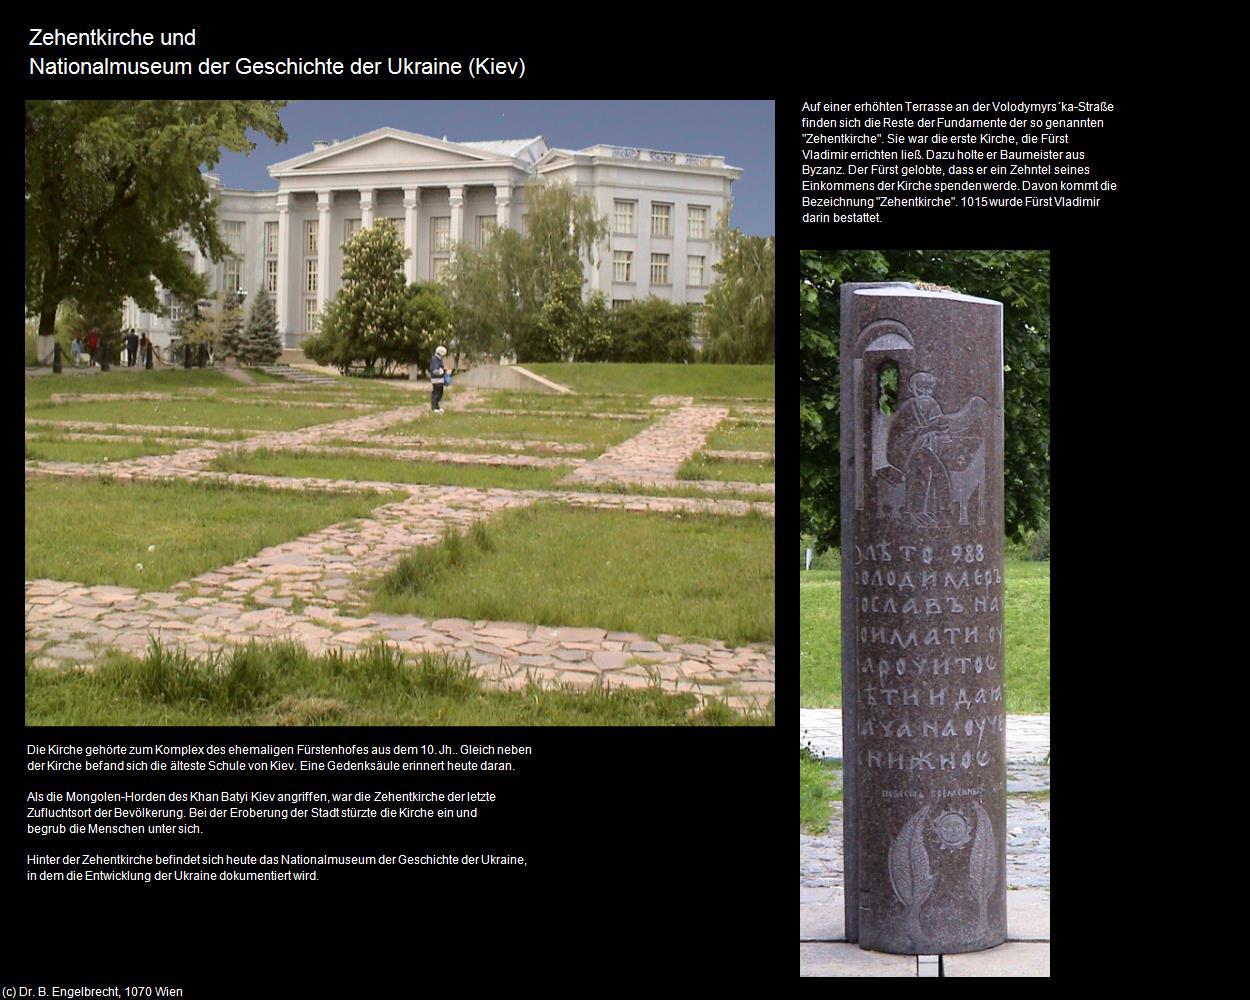 Zehentkirche und Nationalmuseum der Geschichte (Kiev) in UKRAINE